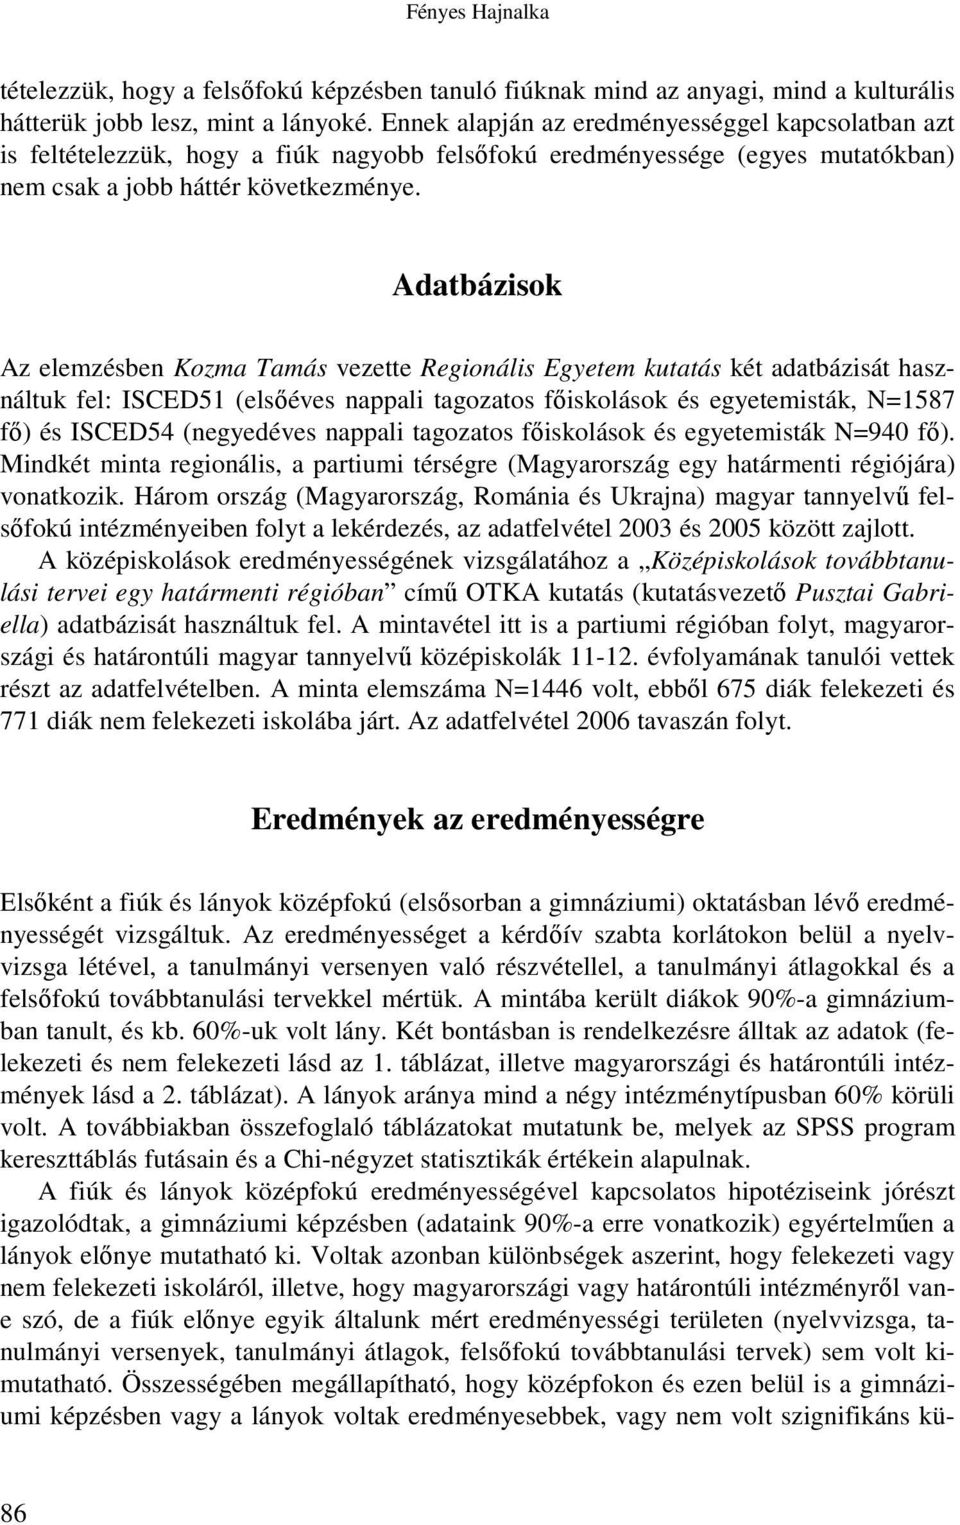 Adatbázisok Az elemzésben Kozma Tamás vezette Regionális Egyetem kutatás két adatbázisát használtuk fel: ISCED51 (elsıéves nappali tagozatos fıiskolások és egyetemisták, N=1587 fı) és ISCED54